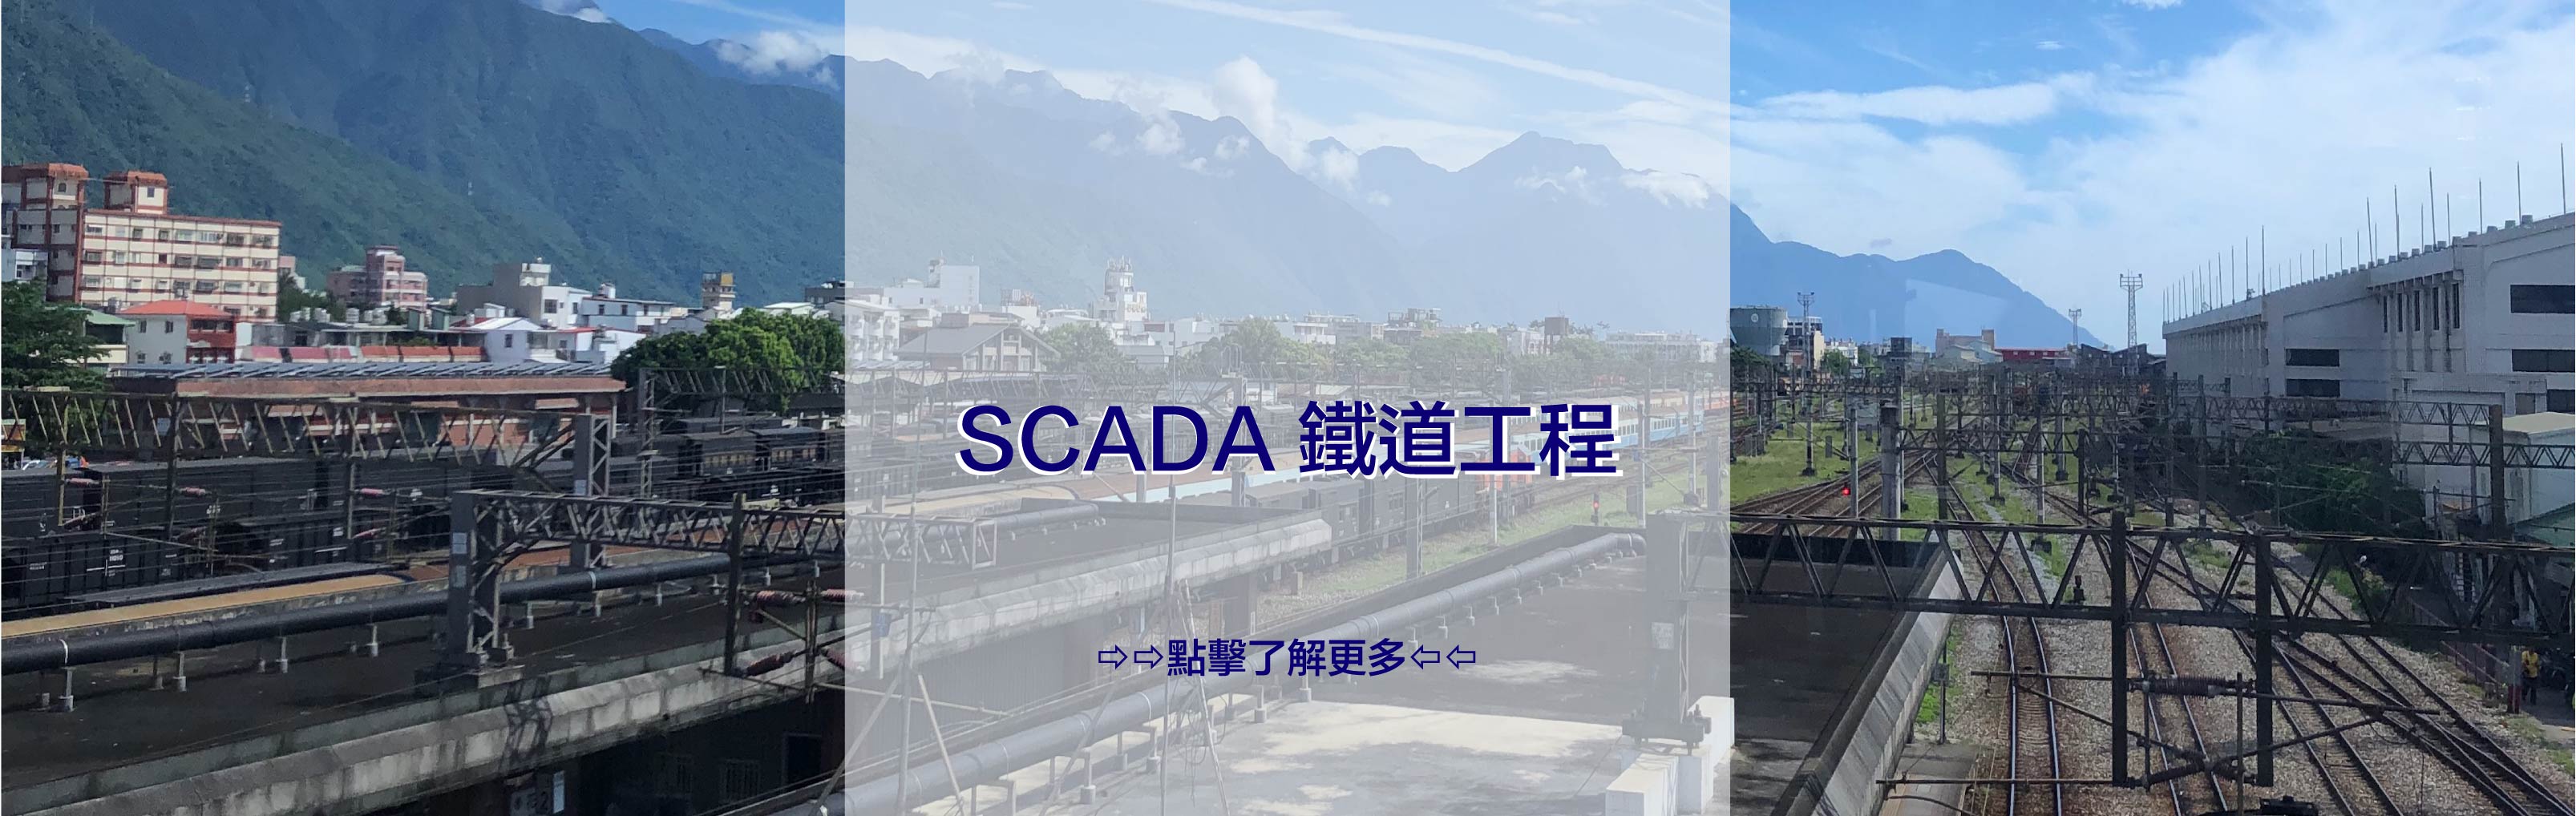 SCADA 鐵道工程 鐵路 平交道